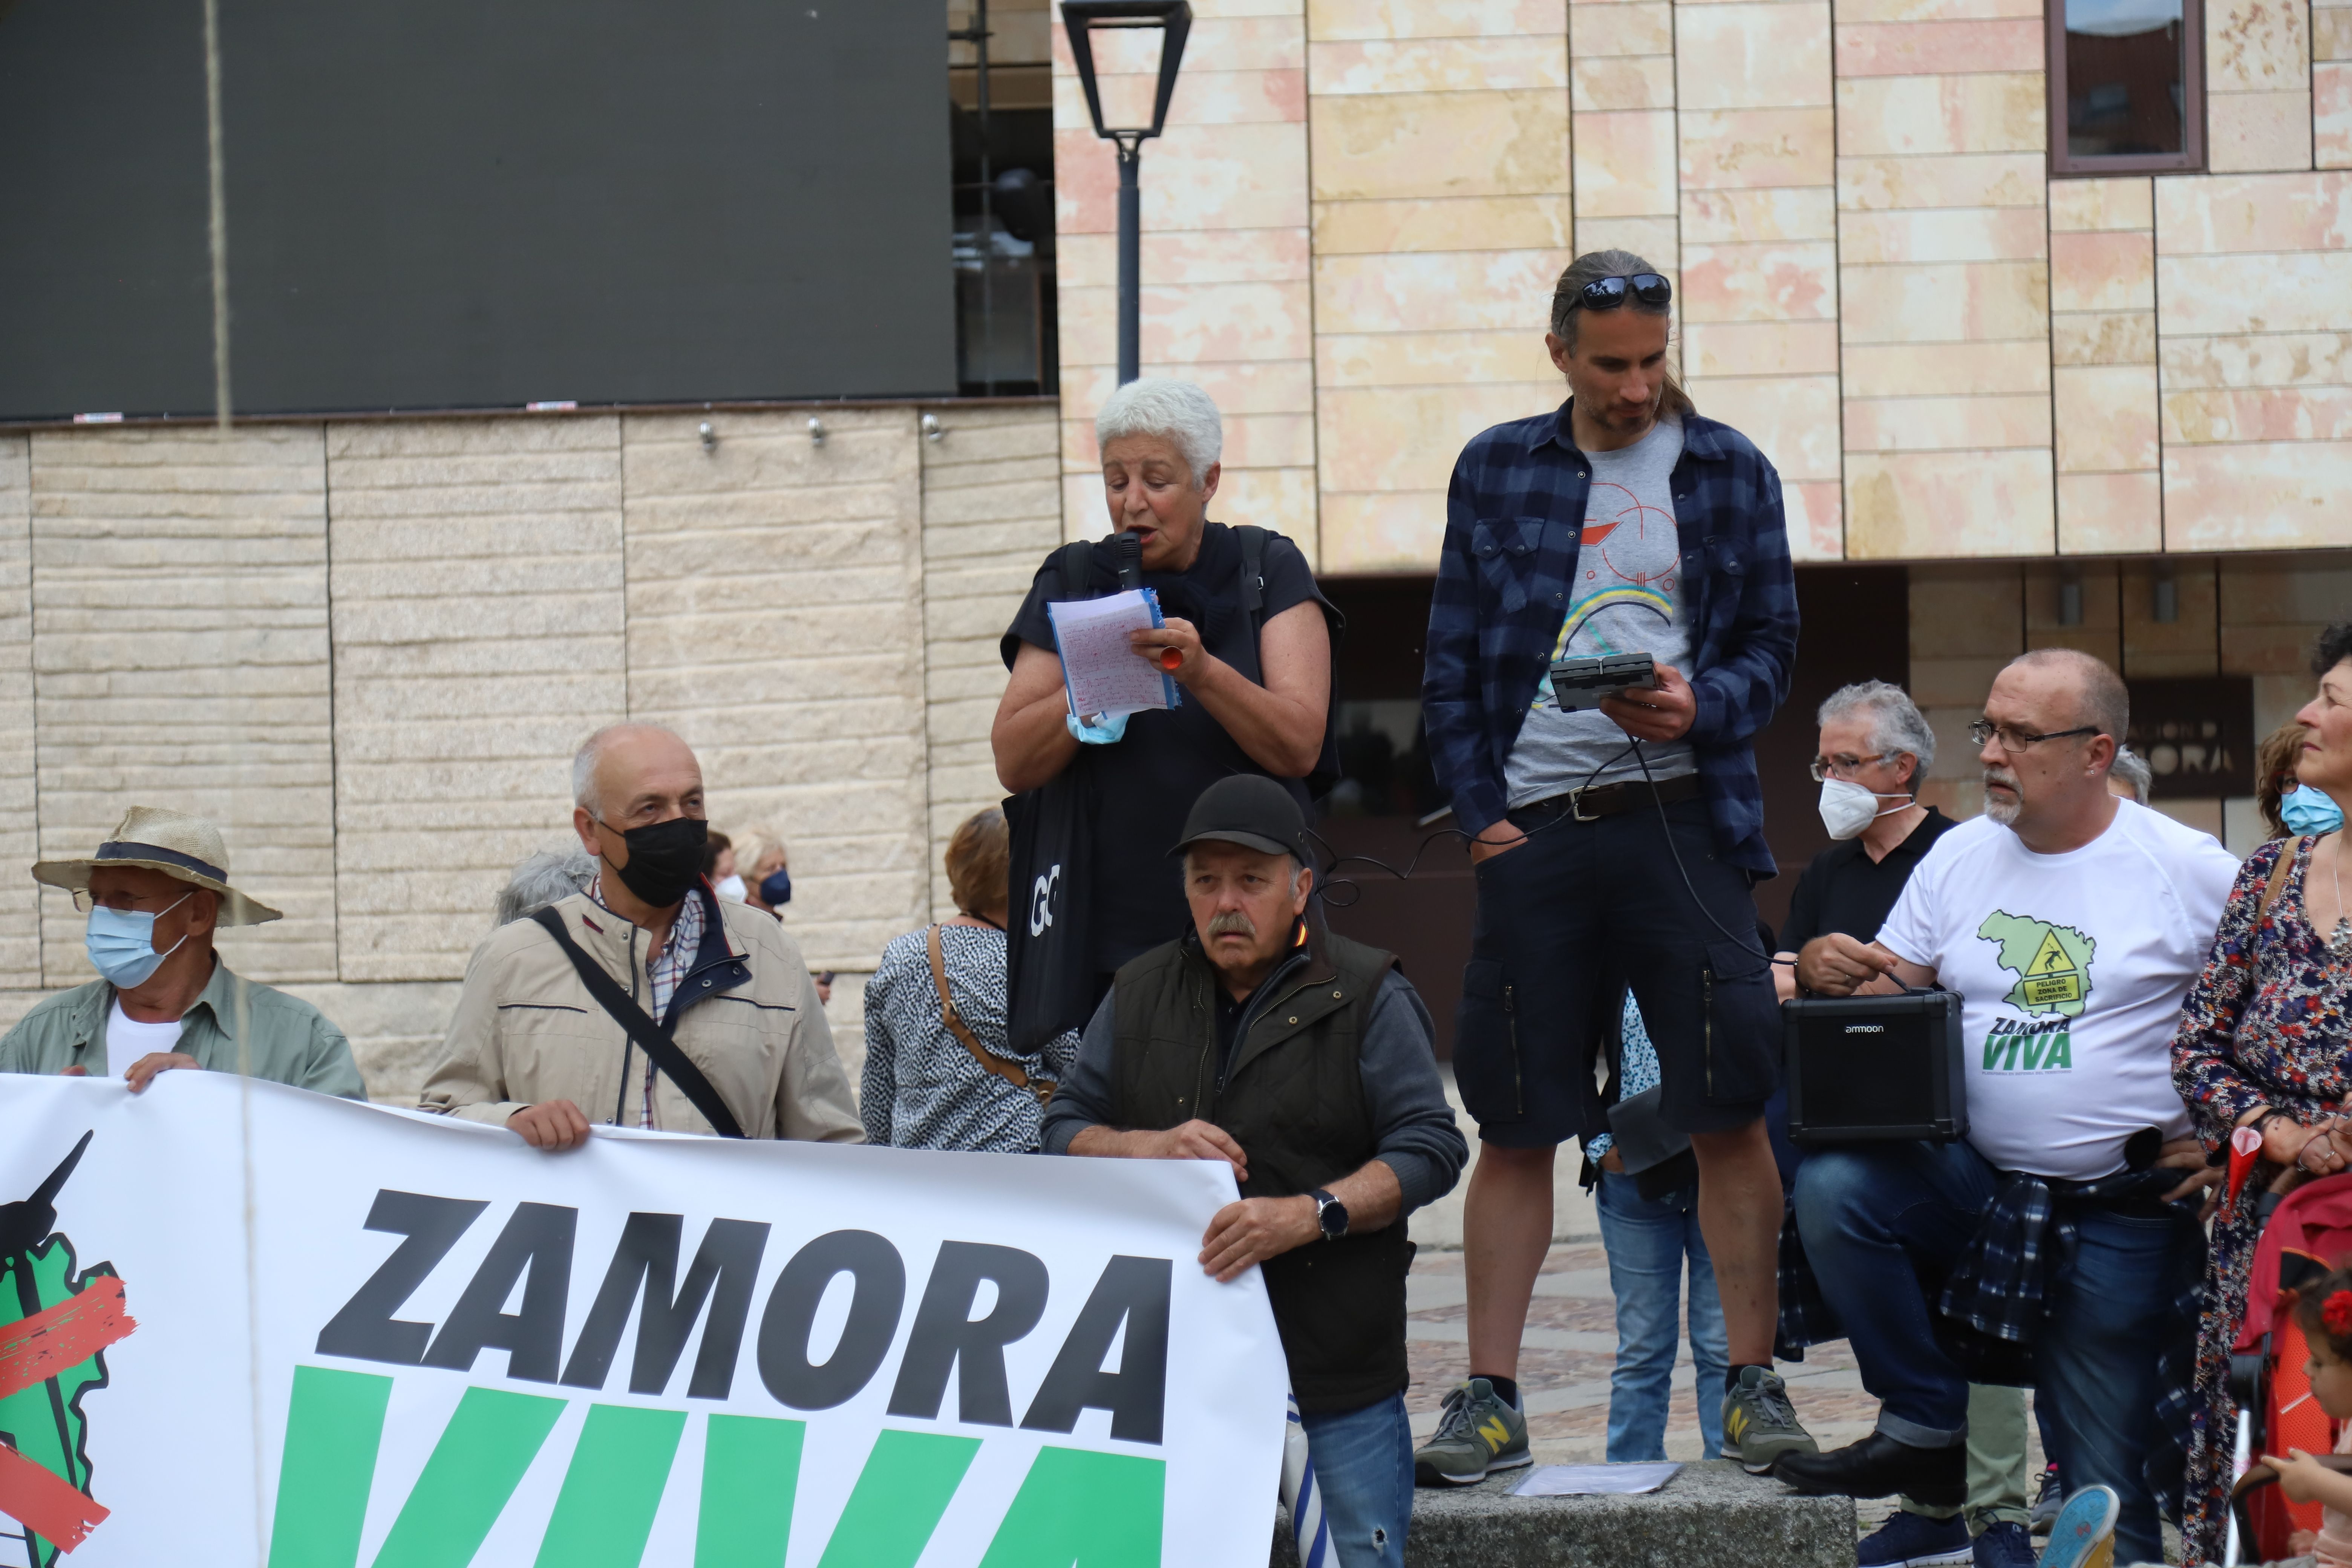 Concentración convocada por Zamora VIva contra a el modelo de implantación de las energías renovables  (10)